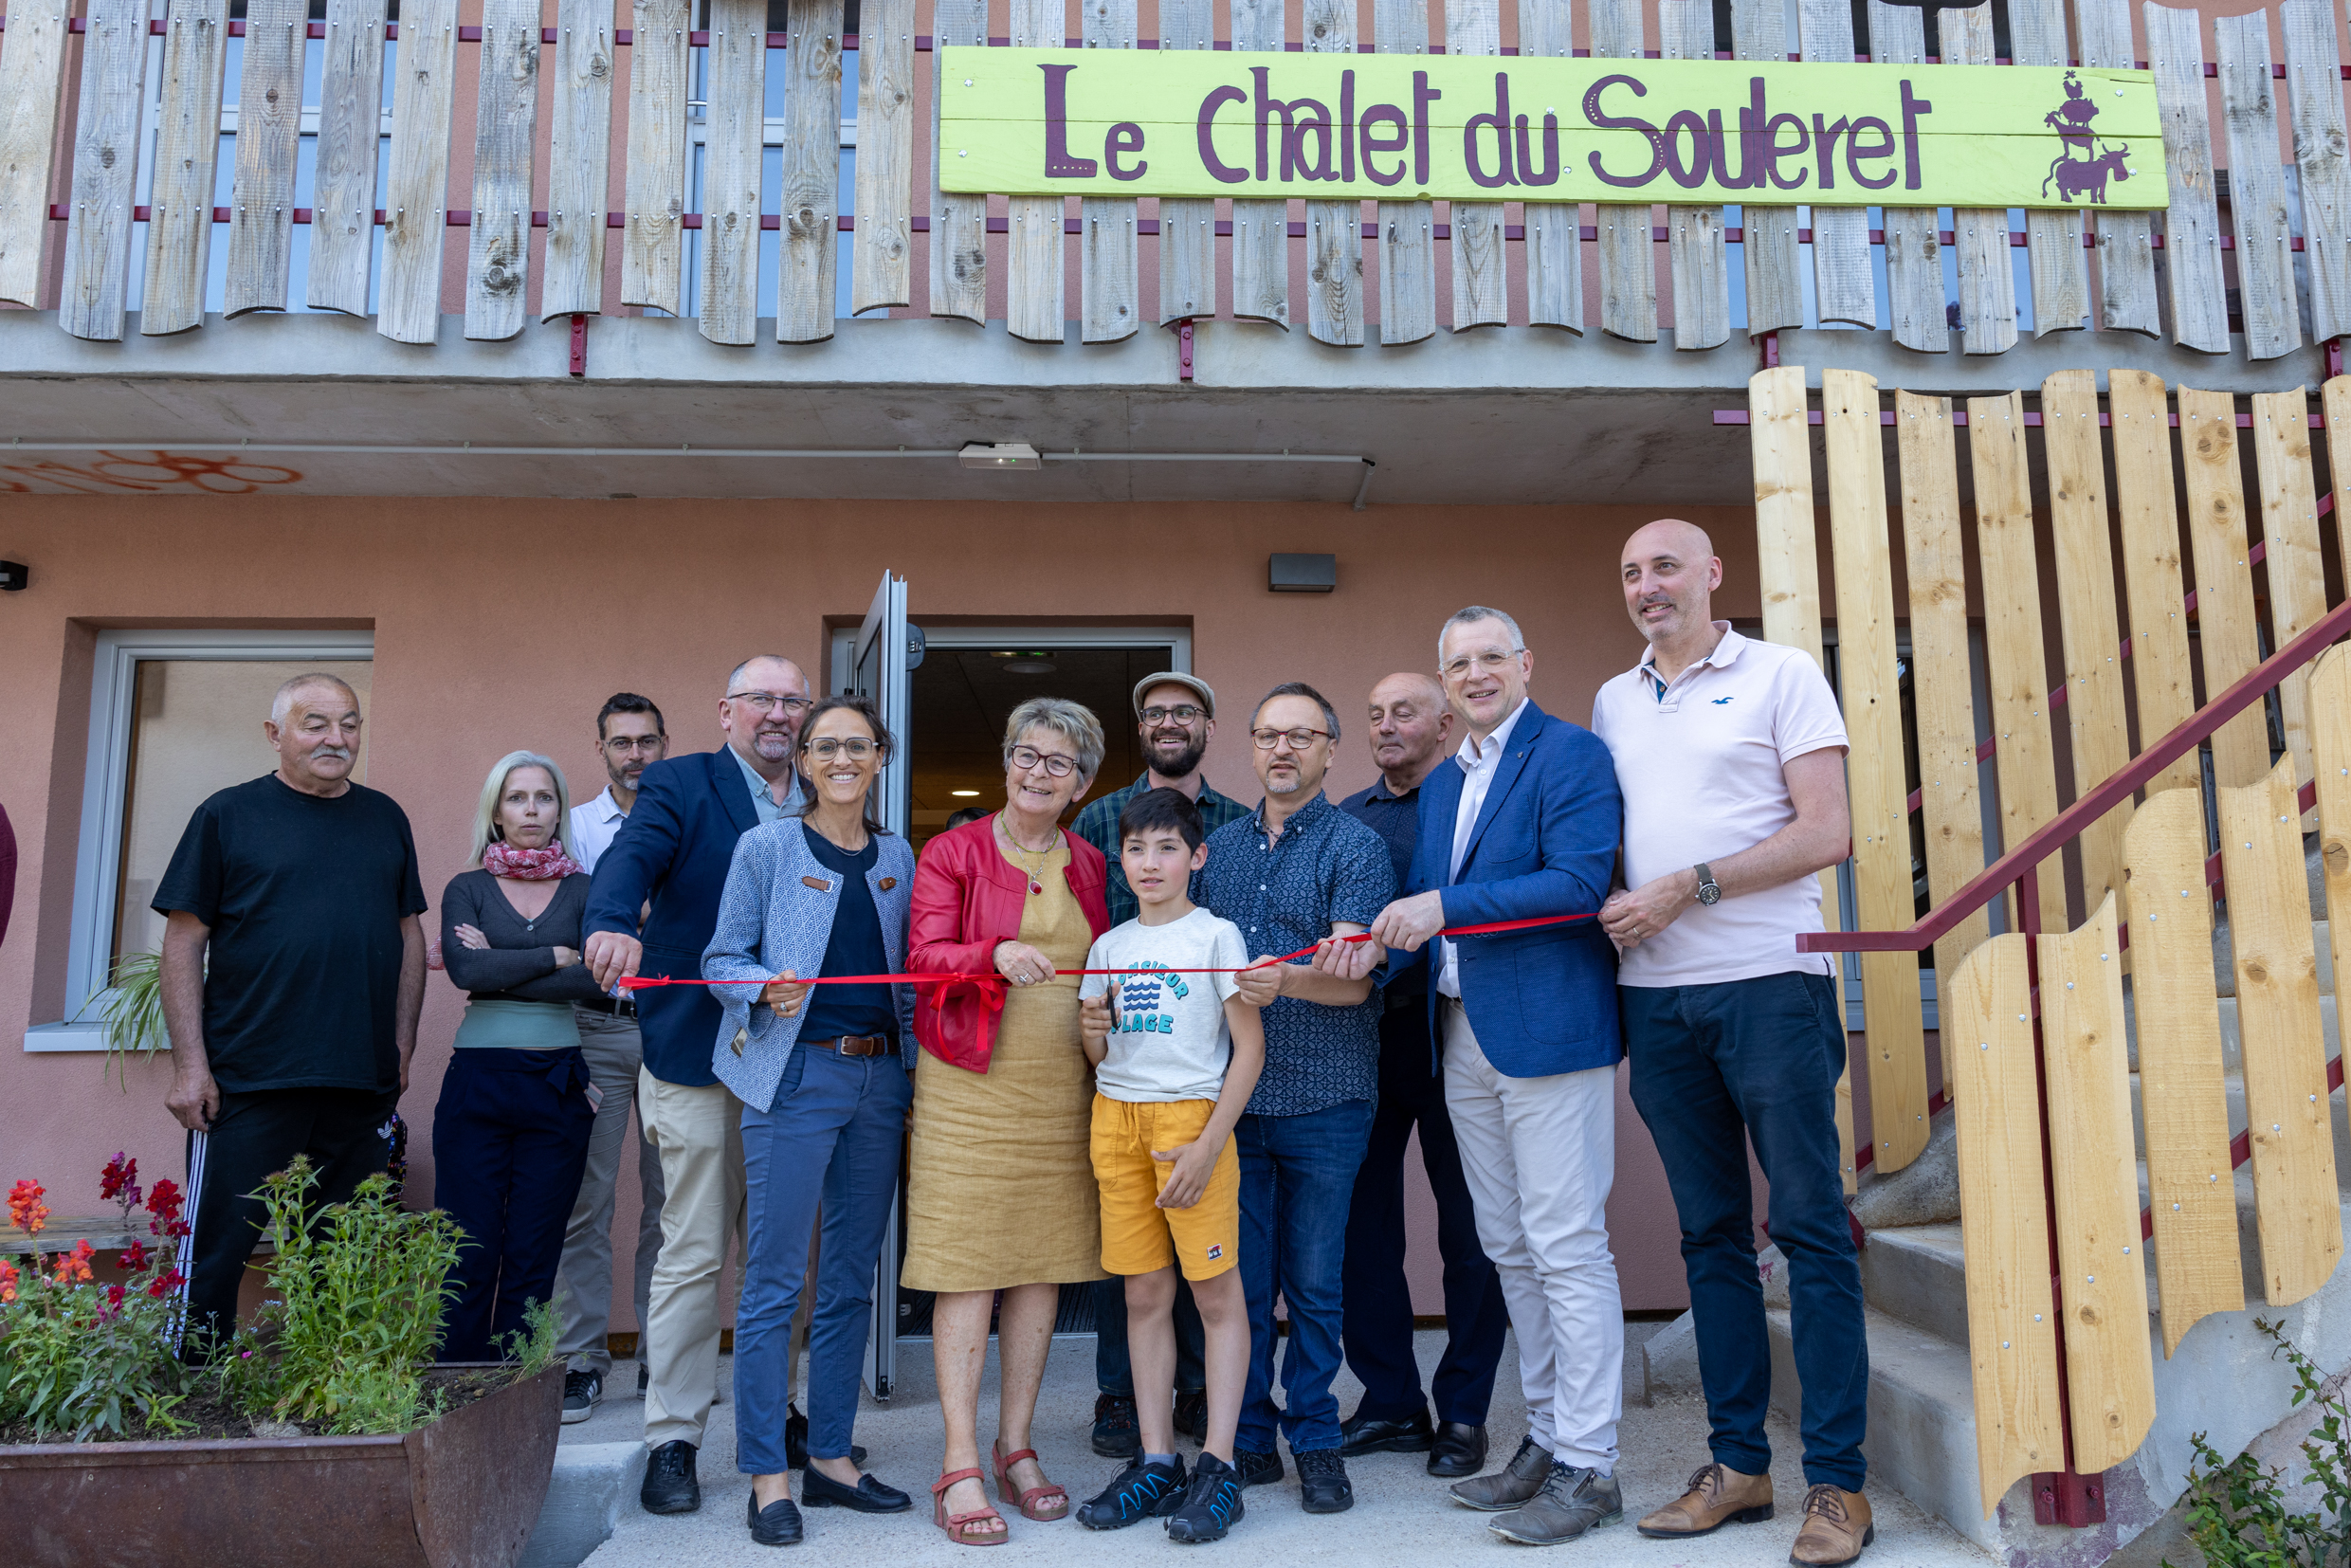 Inauguration des travaux de rénovation du chalet du Souleret, mardi 30 mai dernier à Rochejean (25). Photo : Xavier Ducordeaux